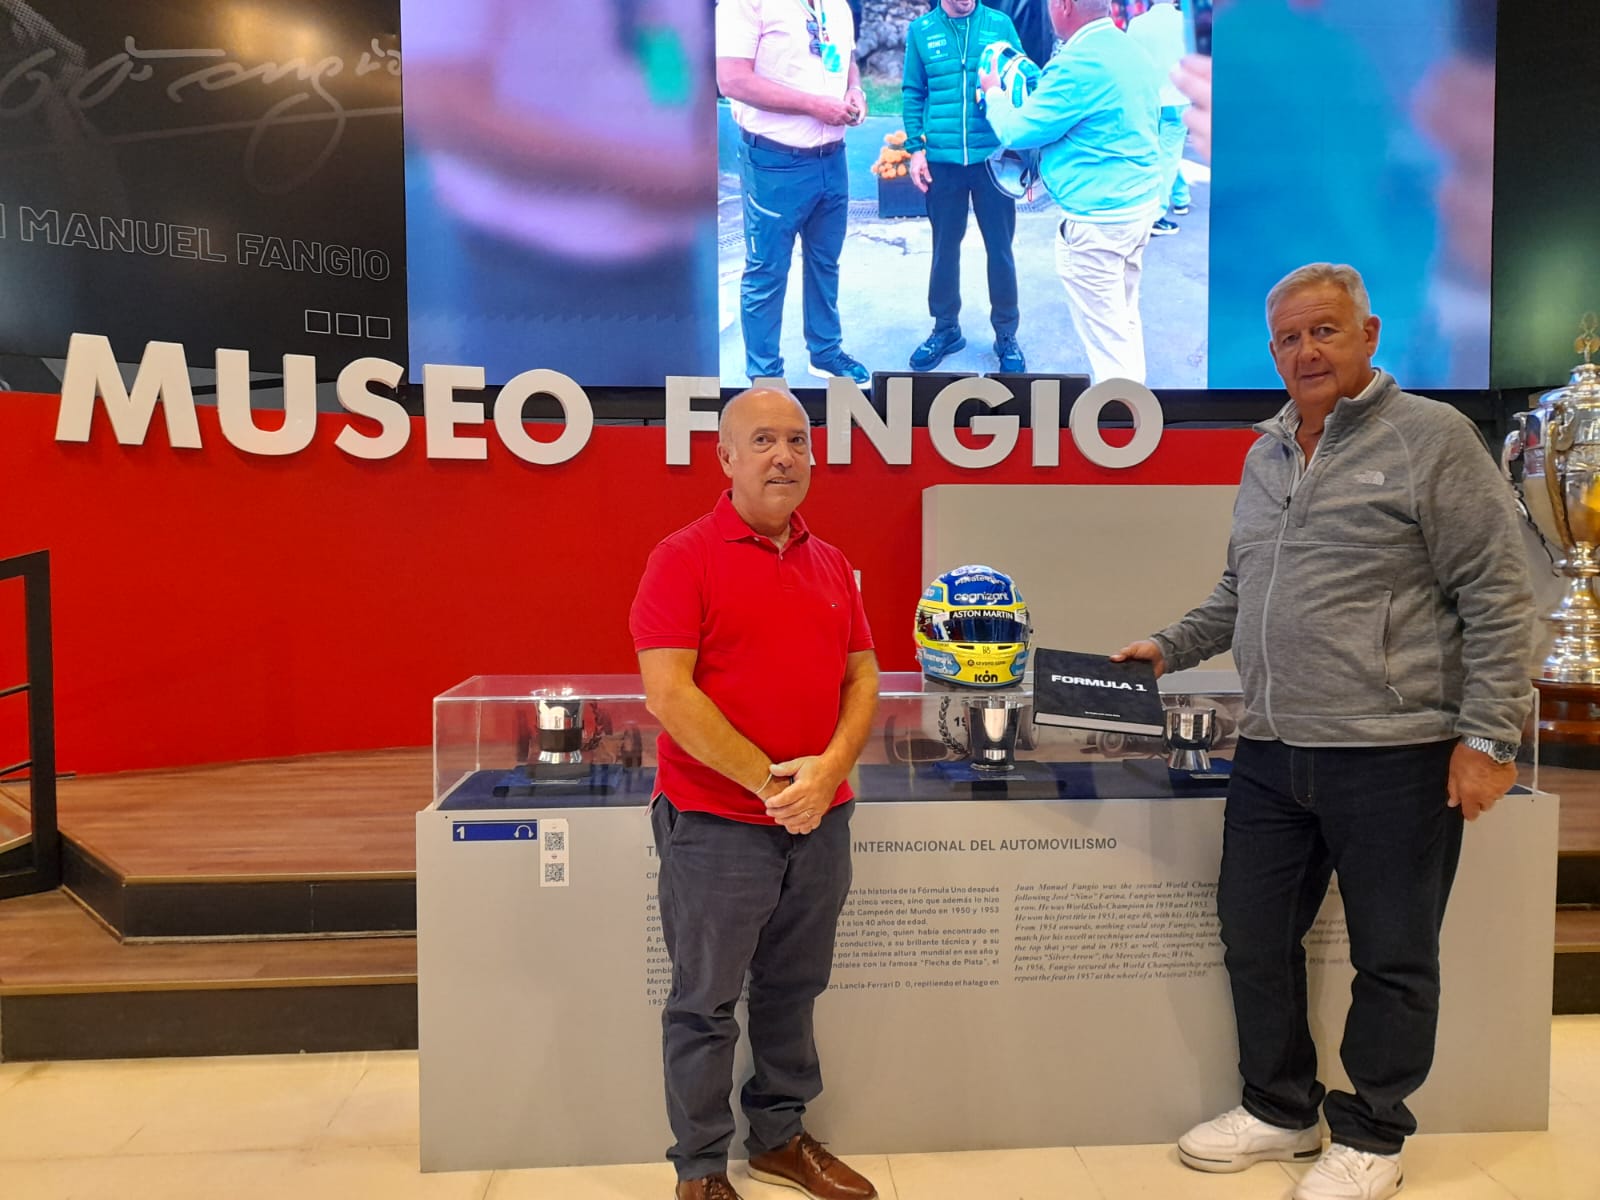 Tras el intercambio, el casco de Fernando Alonso ya está en el Museo Fangio